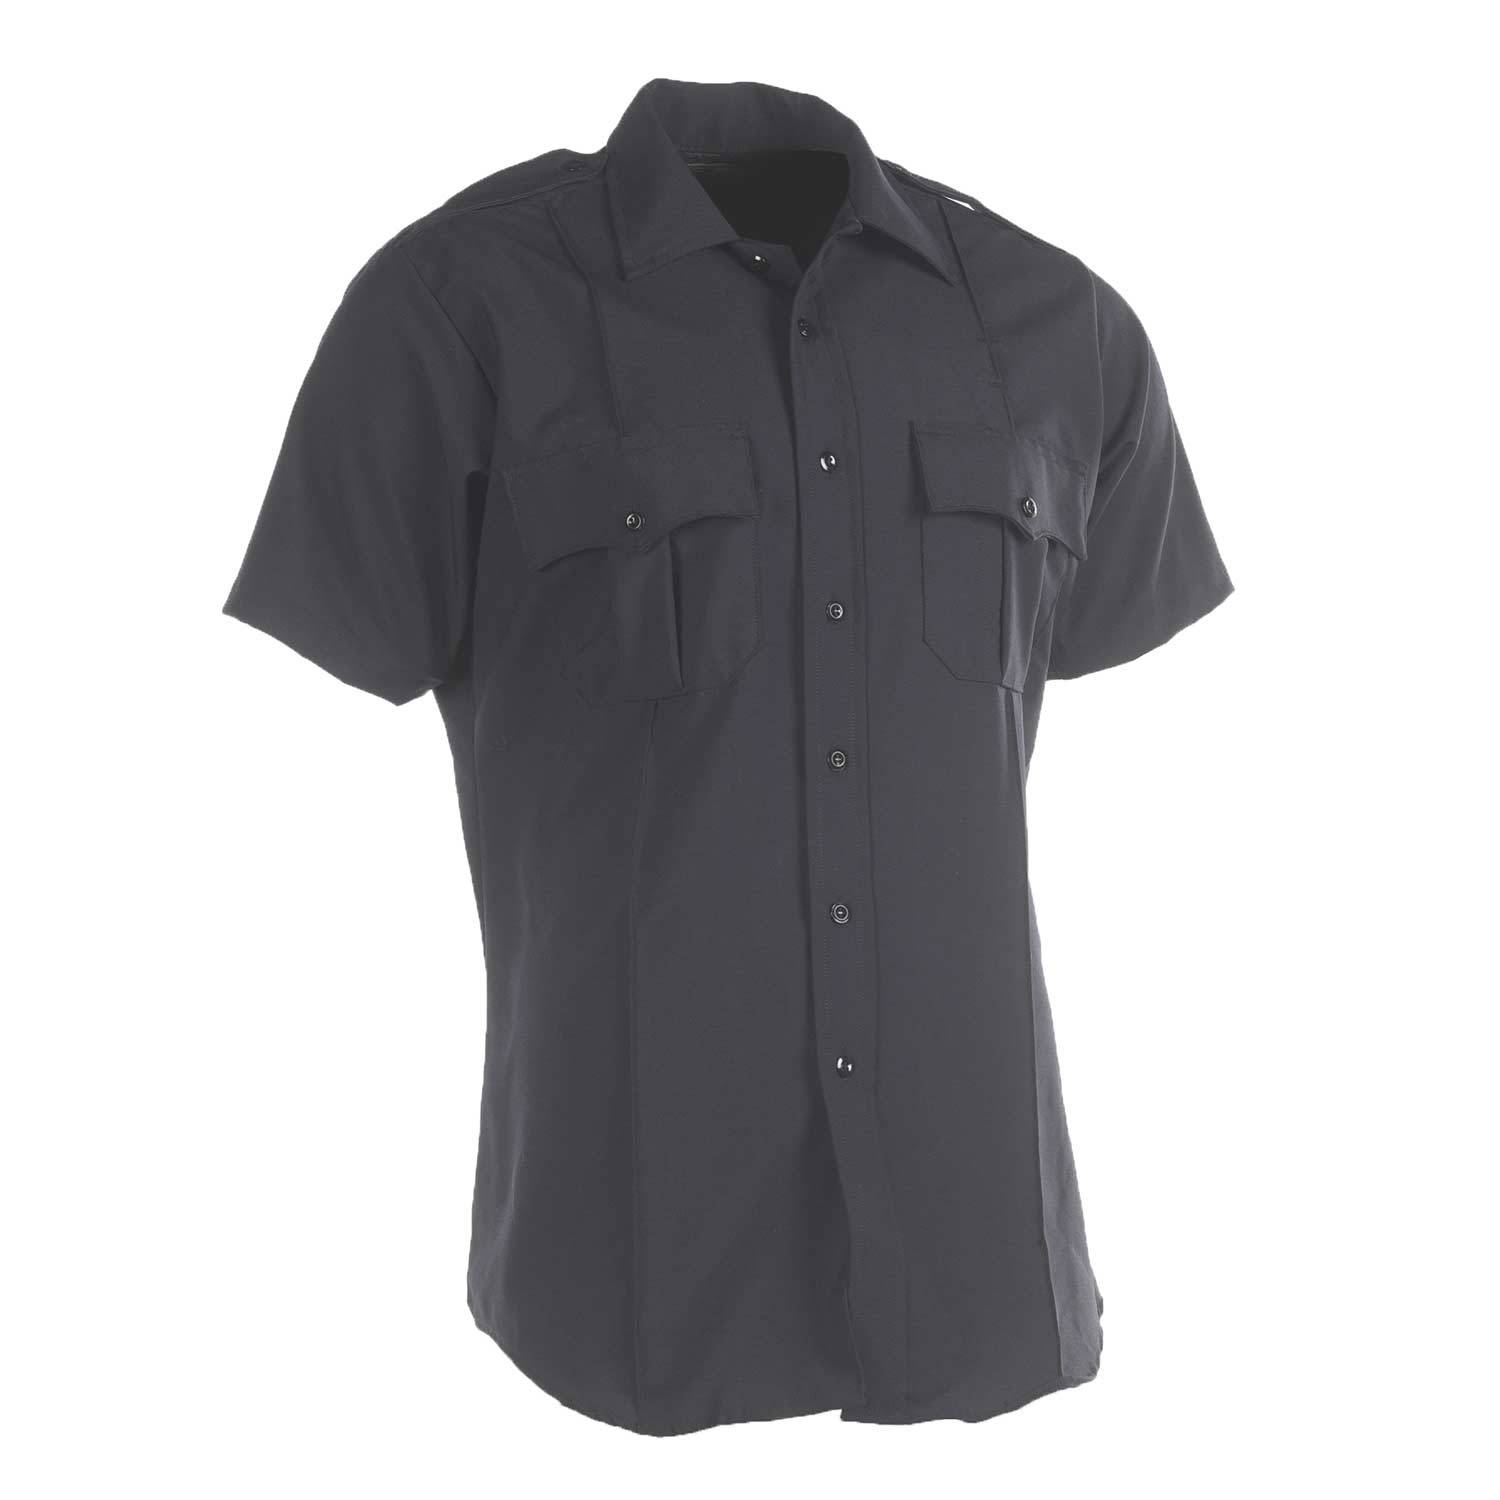 Southeastern Shirt Code 8  Short Sleeve Uniform Shirt